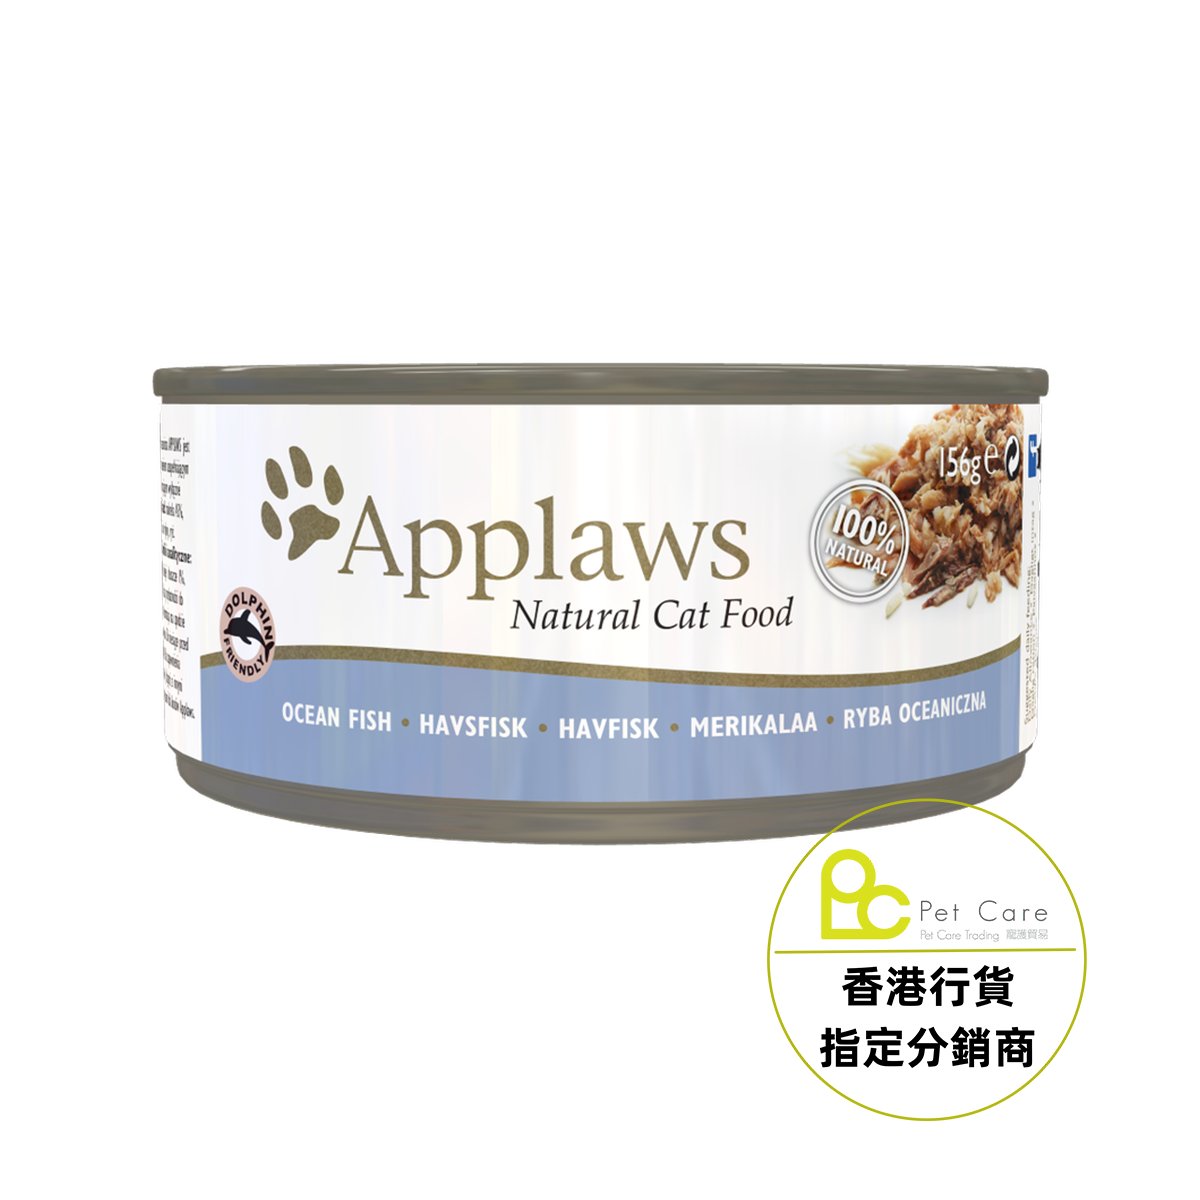 Applaws 全天然 156g 貓罐頭 - 海魚 (大)